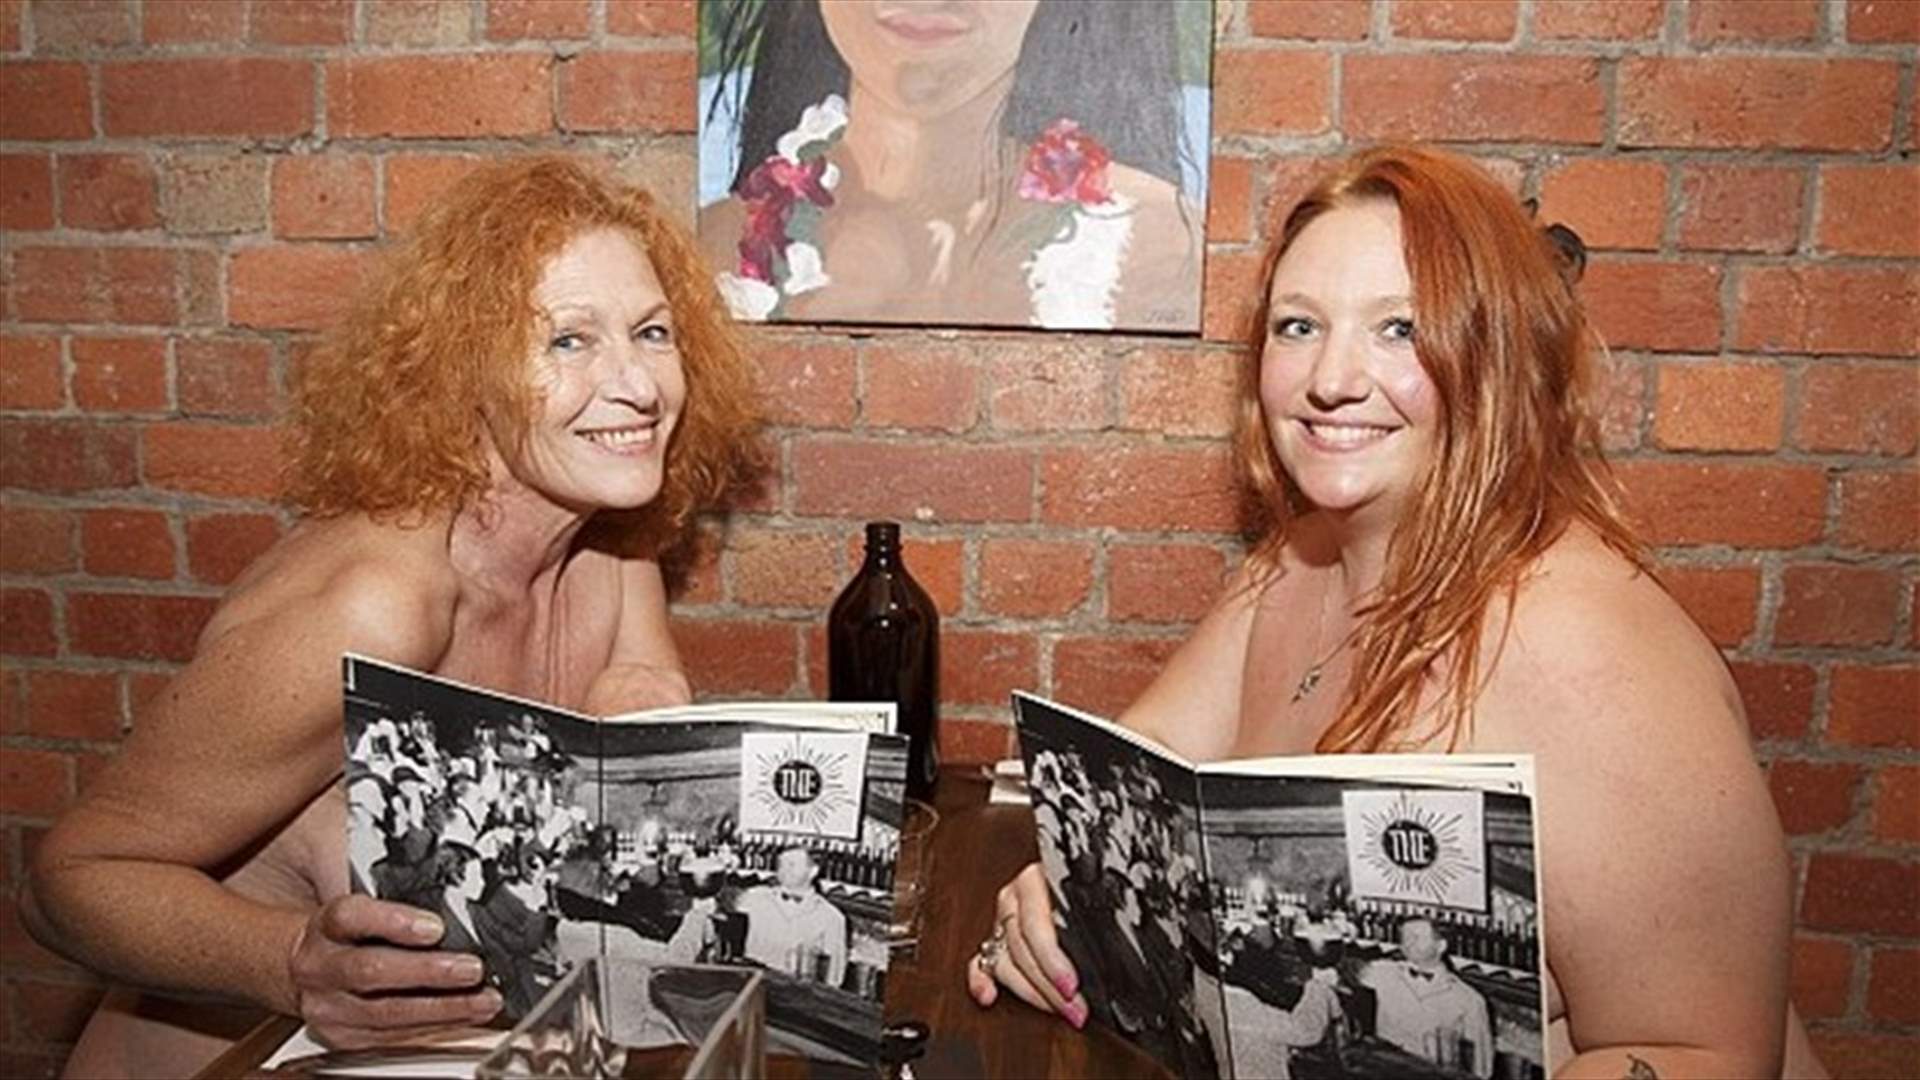 الصوّر الأولى لافتتاح مطعم العراة في استراليا